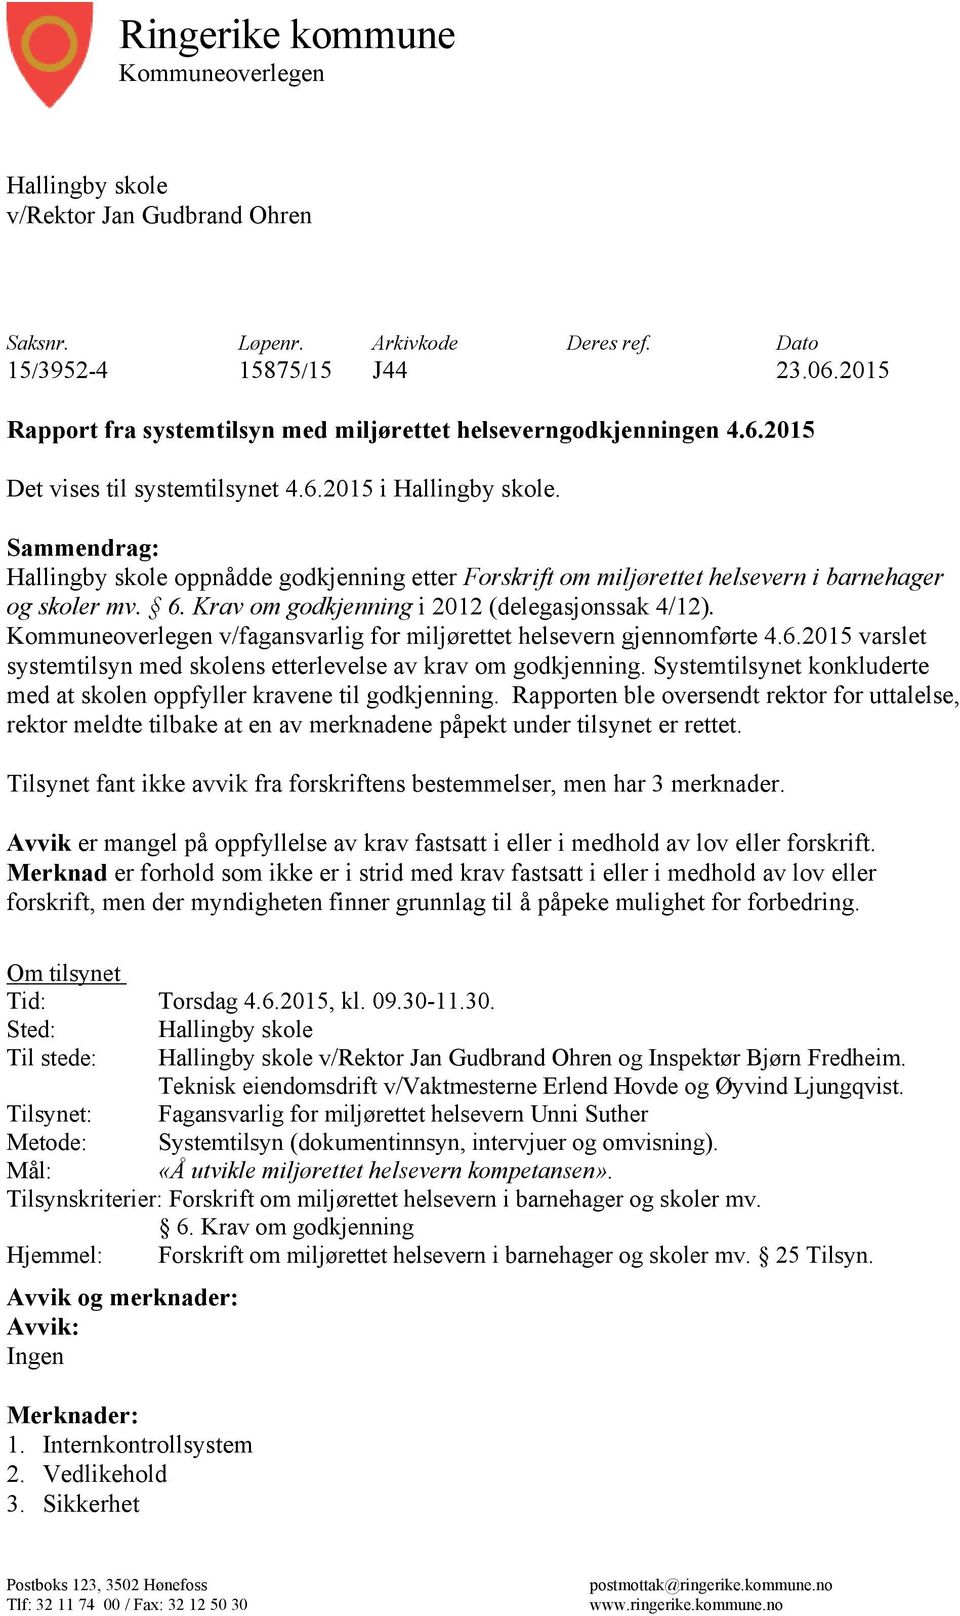 Sammendrag: Hallingby skole oppnådde godkjenning etter Forskrift om miljørettet helsevern i barnehager og skoler mv. 6. Krav om godkjenning i 2012 (delegasjonssak 4/12).